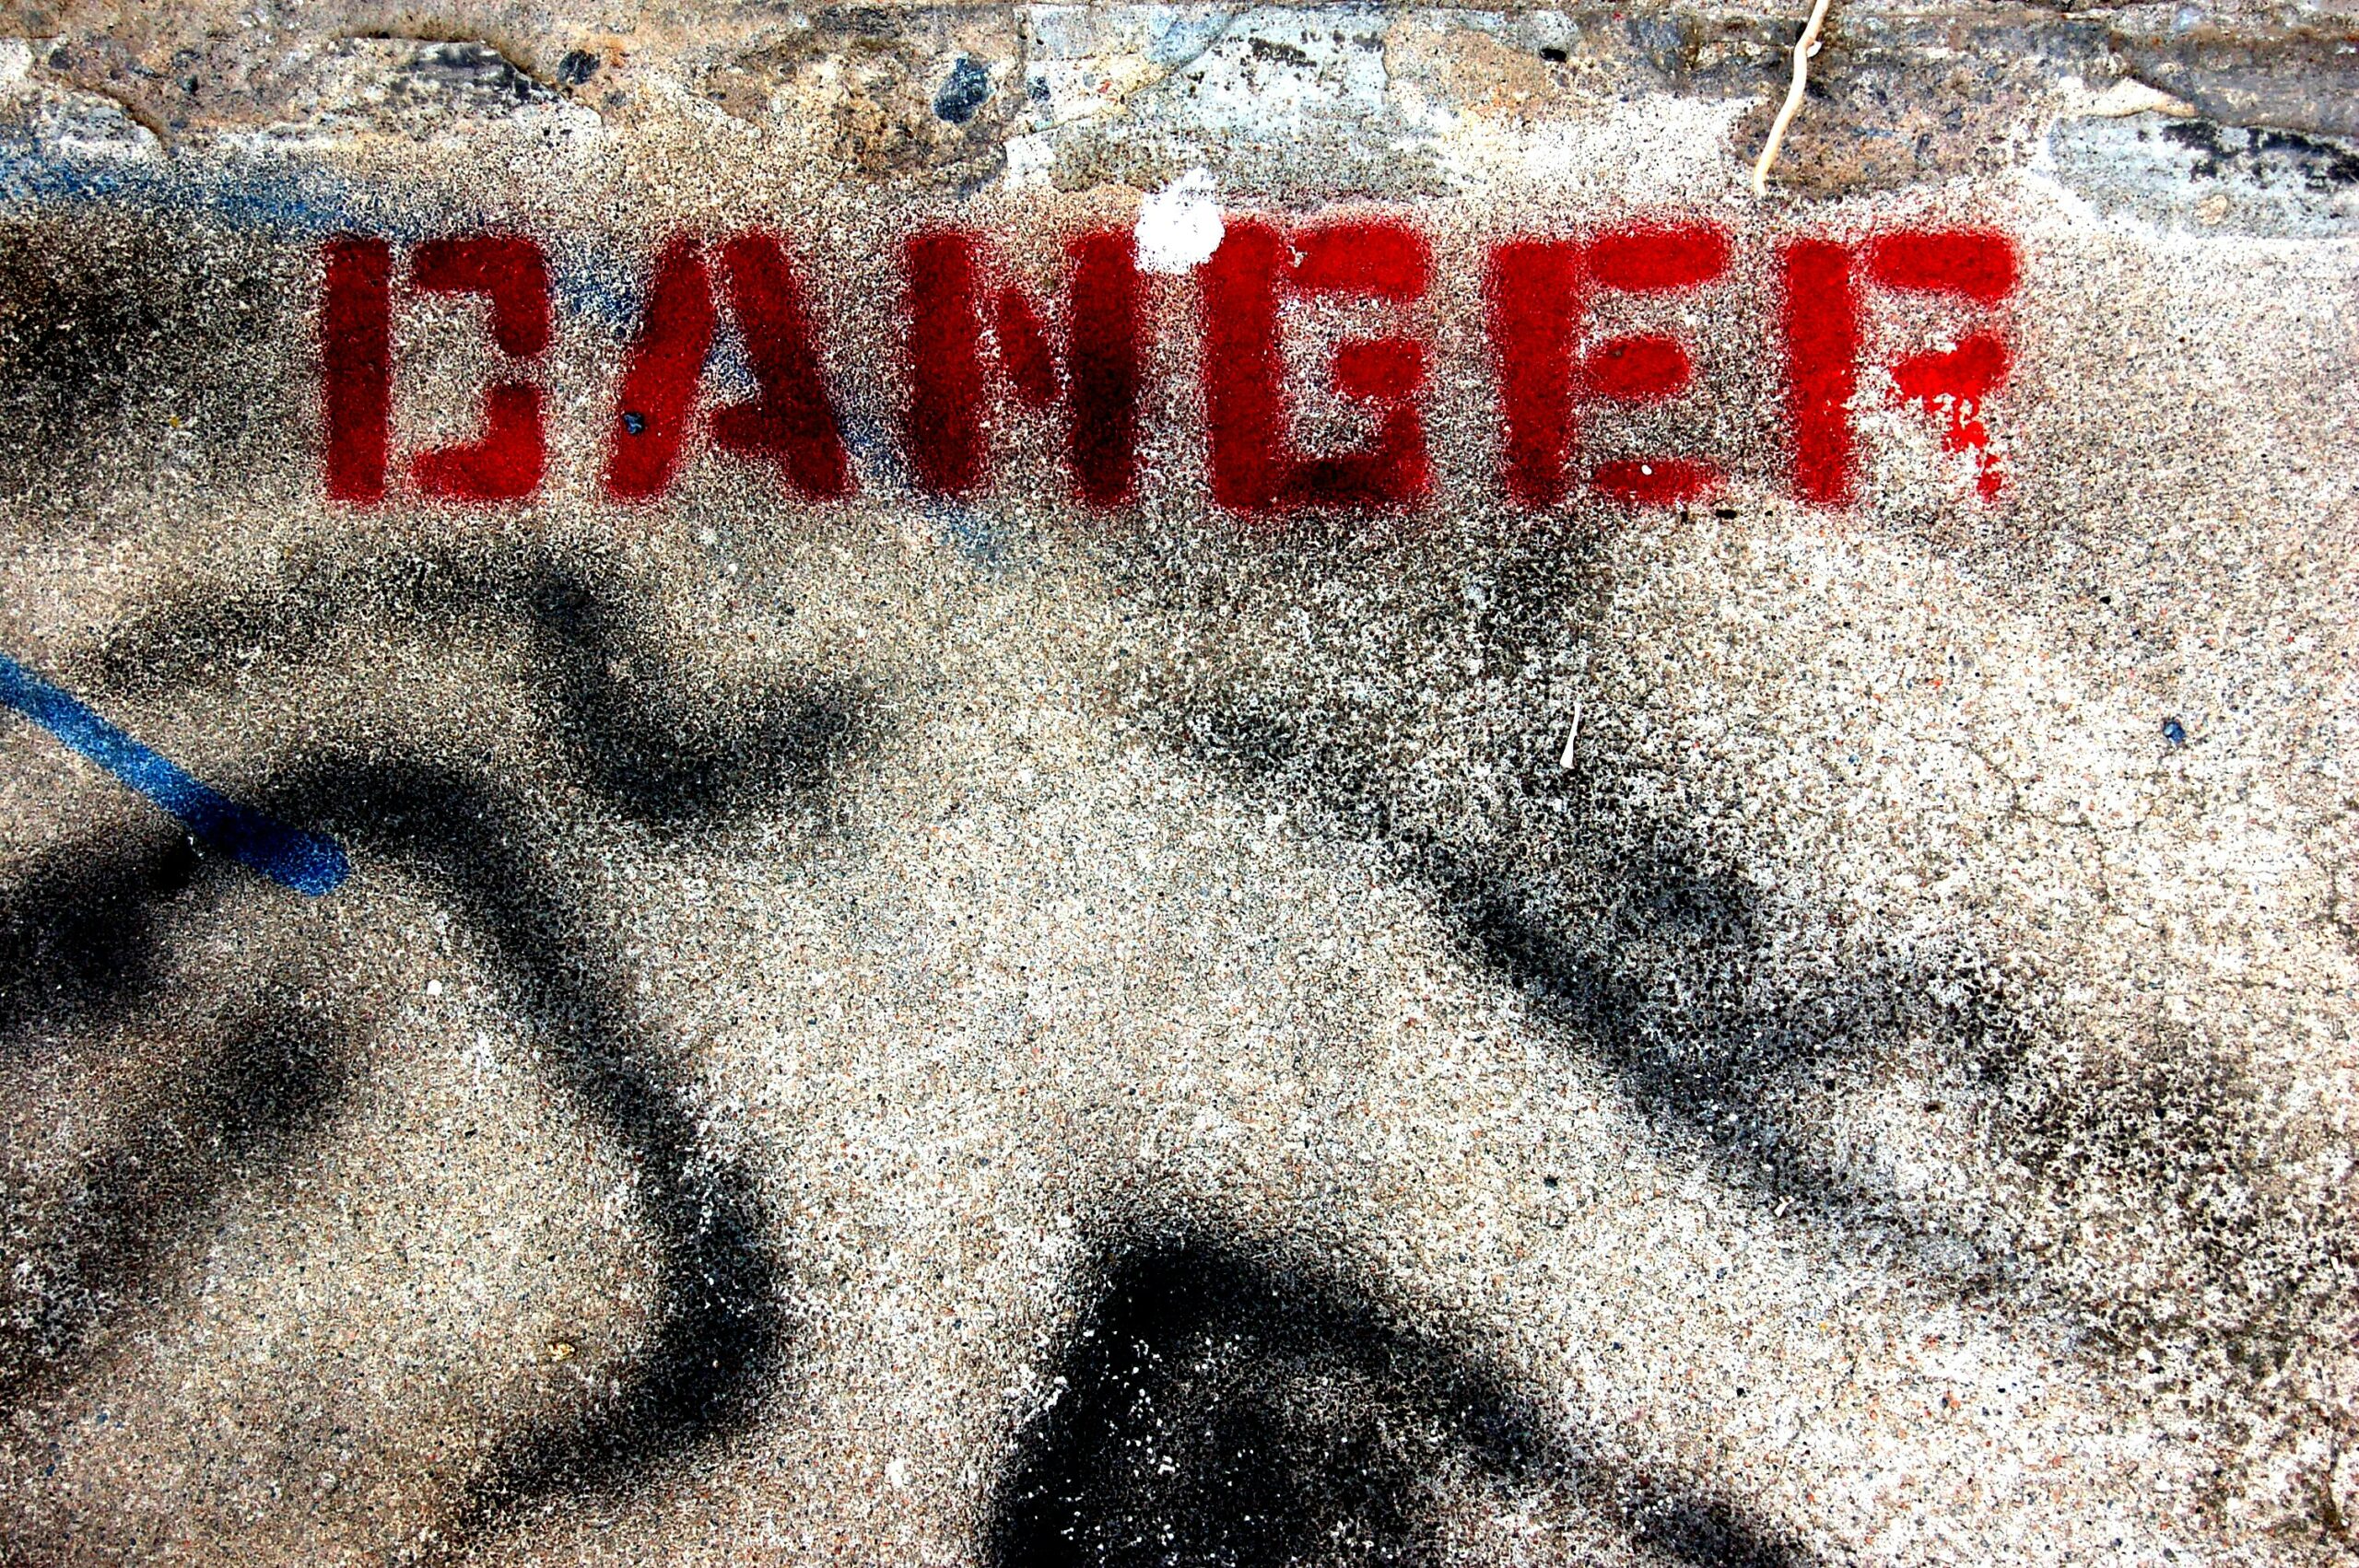 Immagine della dritta "DANGER" in stampatello fatta con la bomboletta rossa su un pavimento d'asfalto.